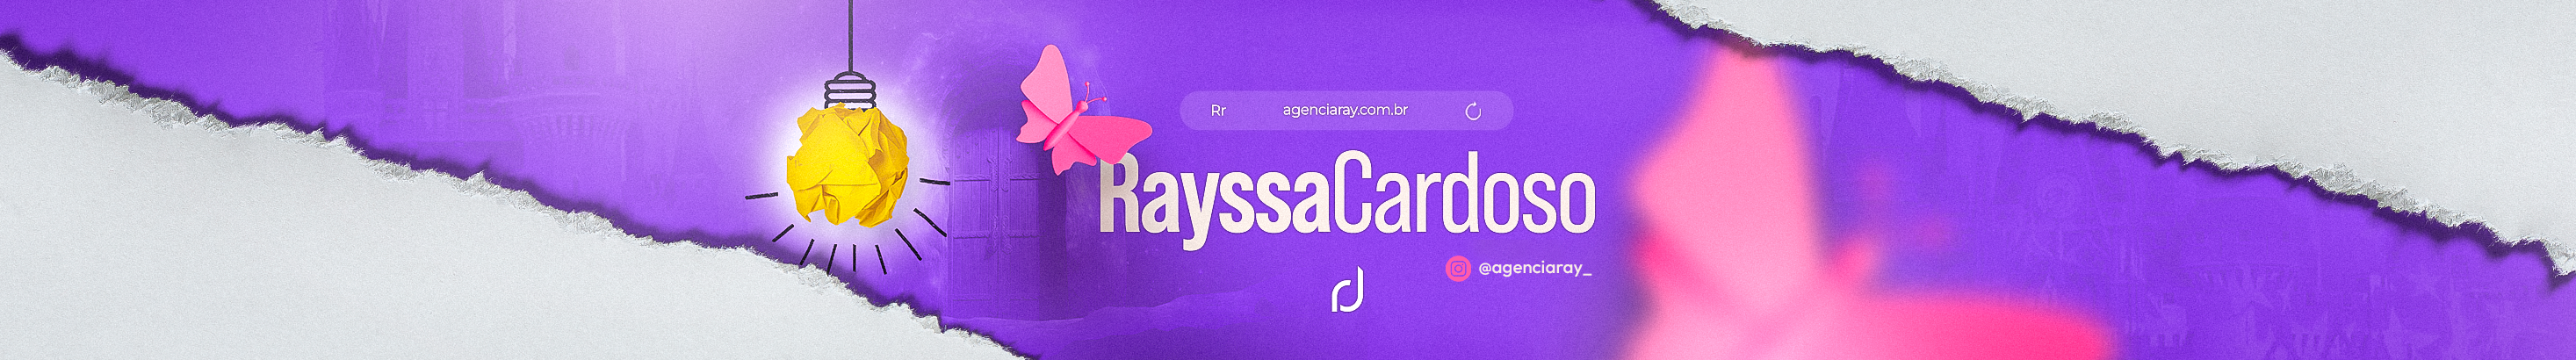 Profielbanner van Rayssa Cardoso